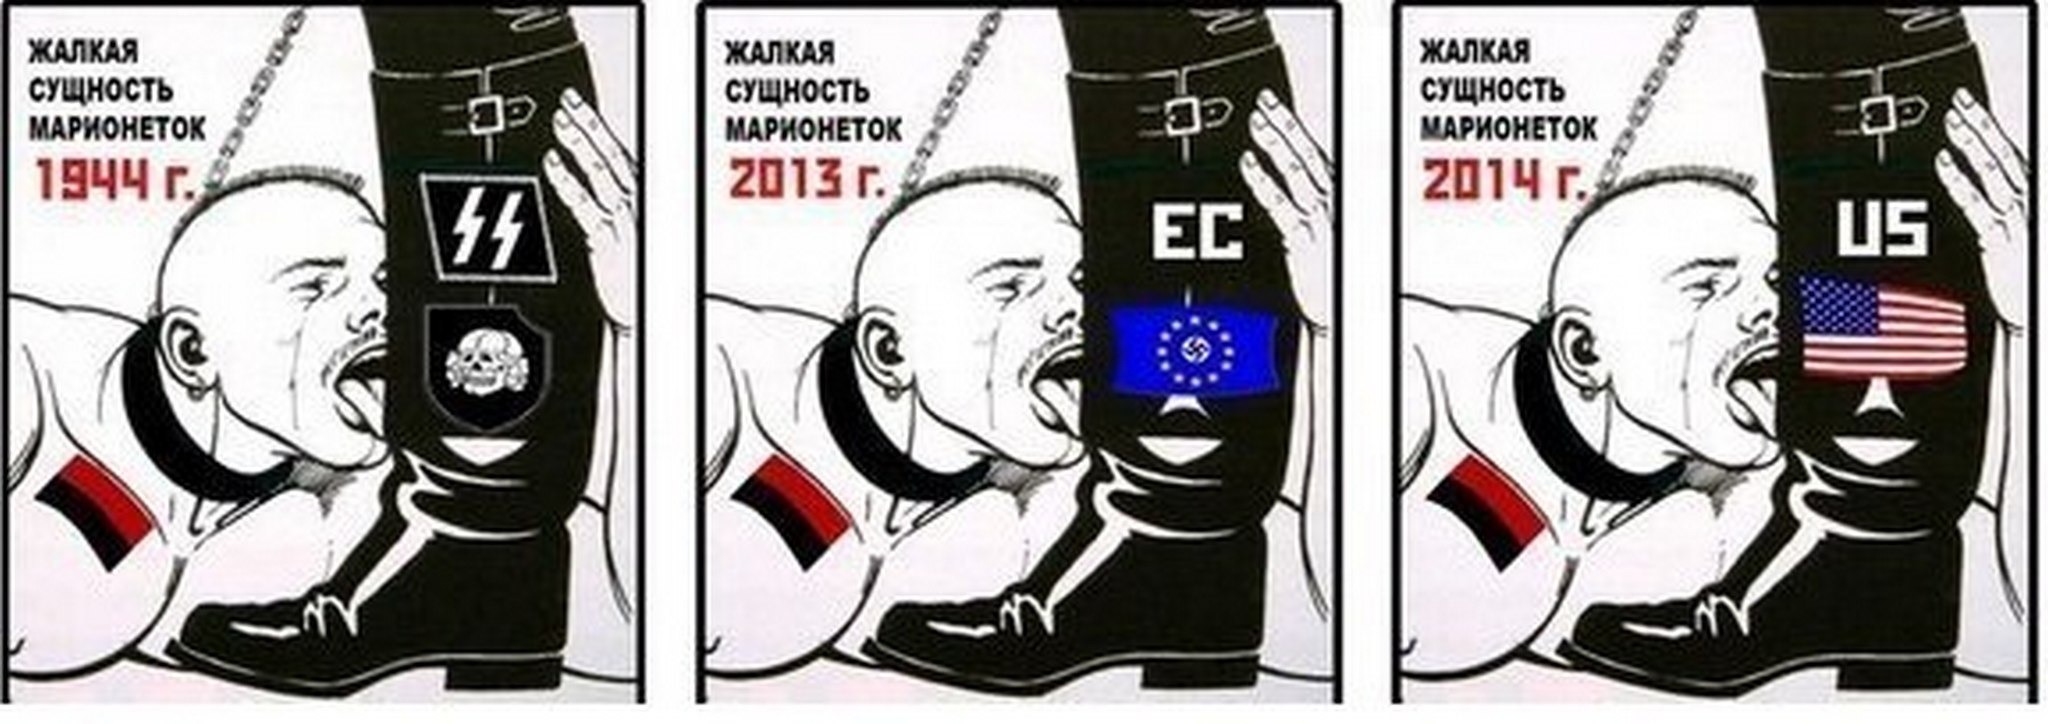 Карикатуры на украинских националистов